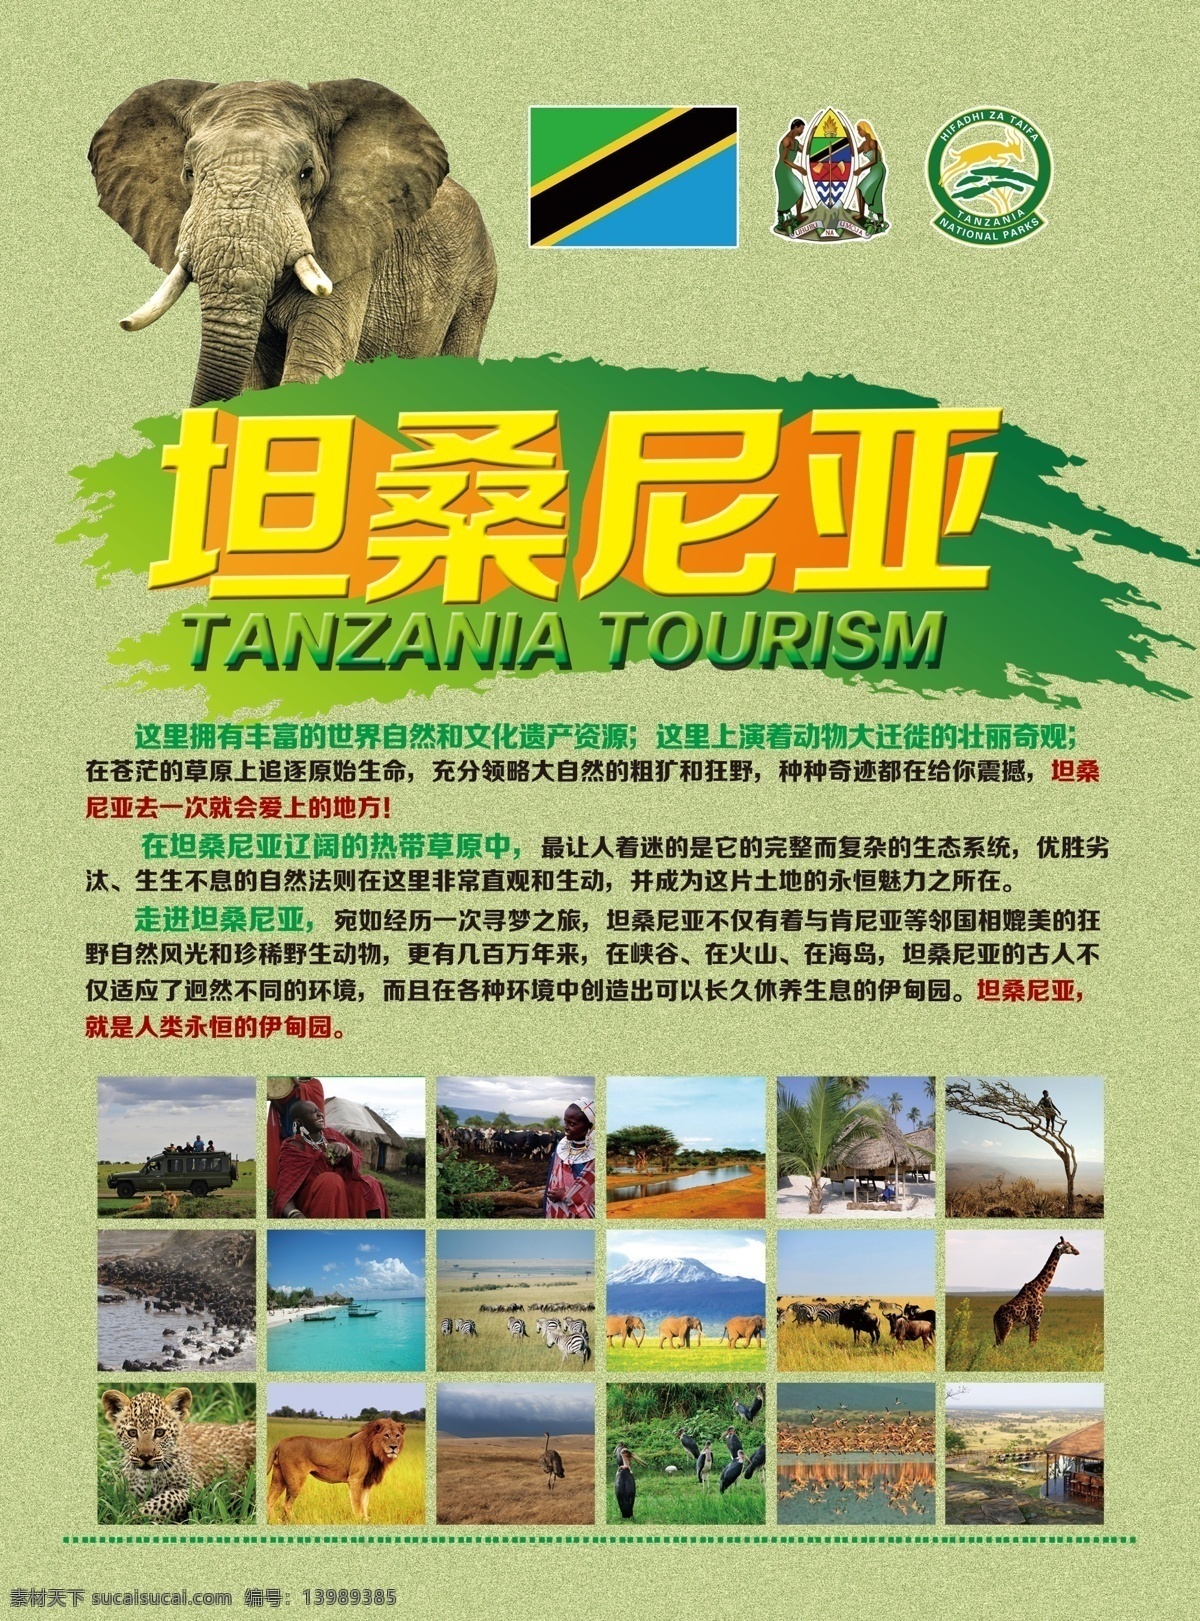 坦桑尼亚单页 畅游坦桑尼亚 旅游 宣传单 广告设计模板 源文件